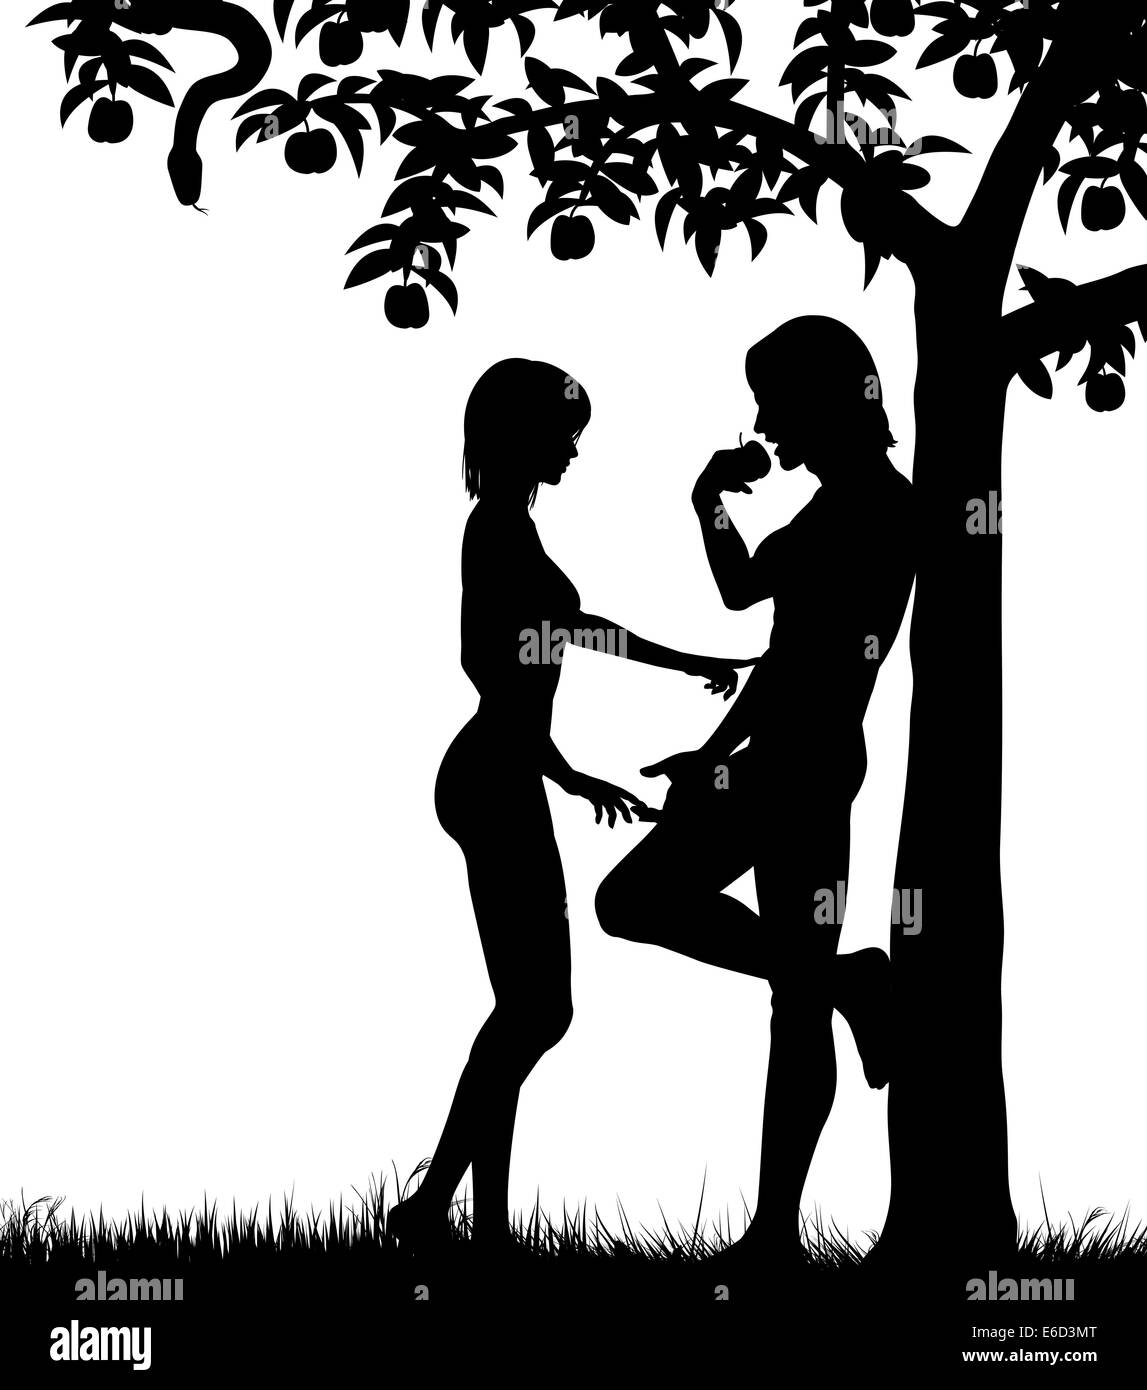 Silhouettes vecteur modifiable d'Adam et Eve et un pommier avec tous les chiffres en tant qu'objets séparés Illustration de Vecteur